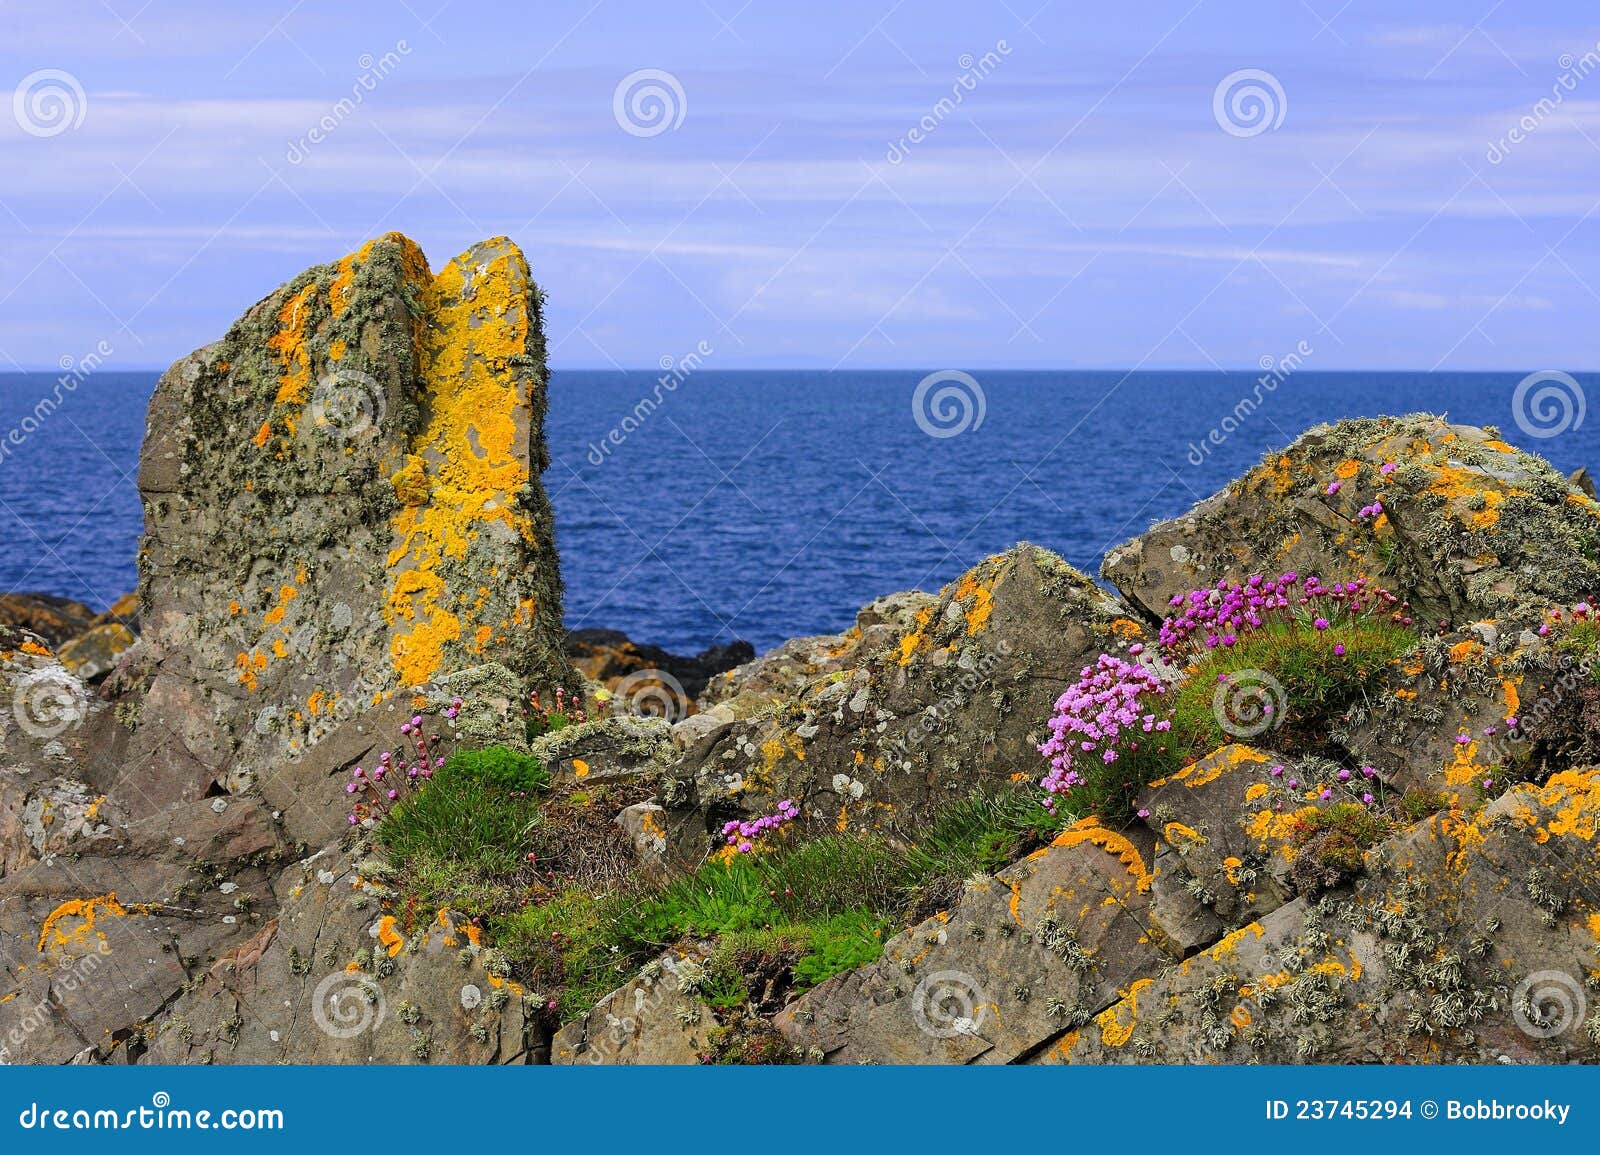 lichen and thrift growth, coastal rocks